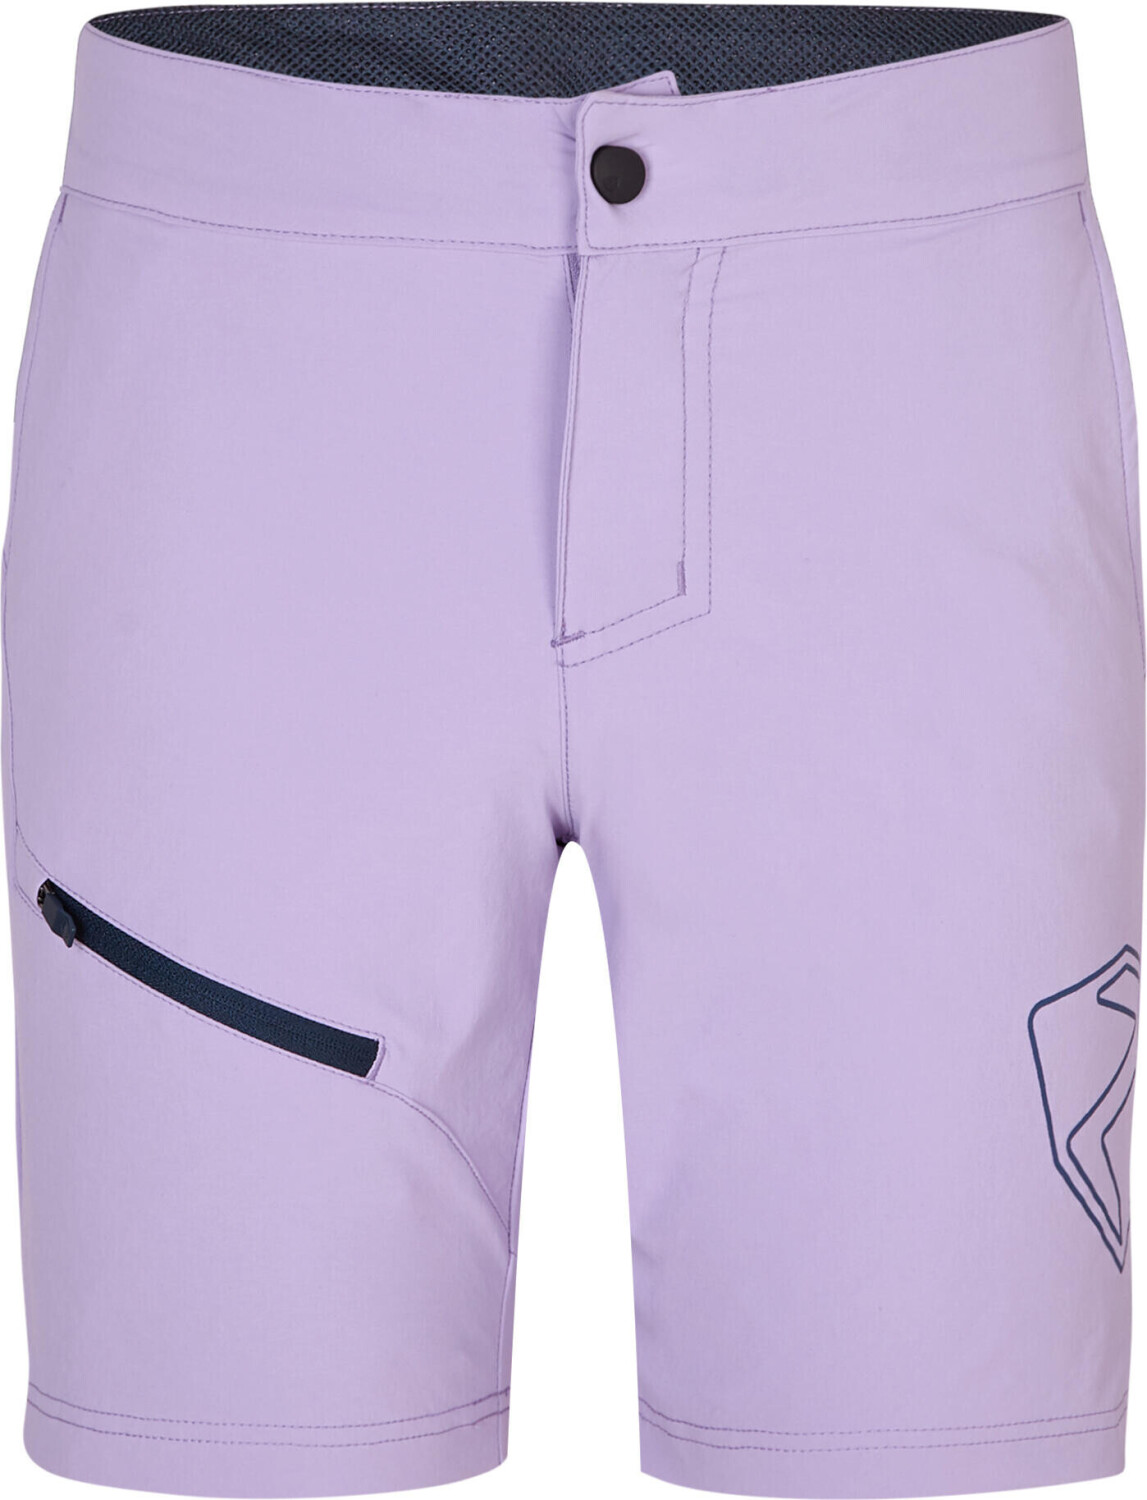 Ziener Natsu X-function Junior Shorts sweet lilac ab 26,71 € |  Preisvergleich bei